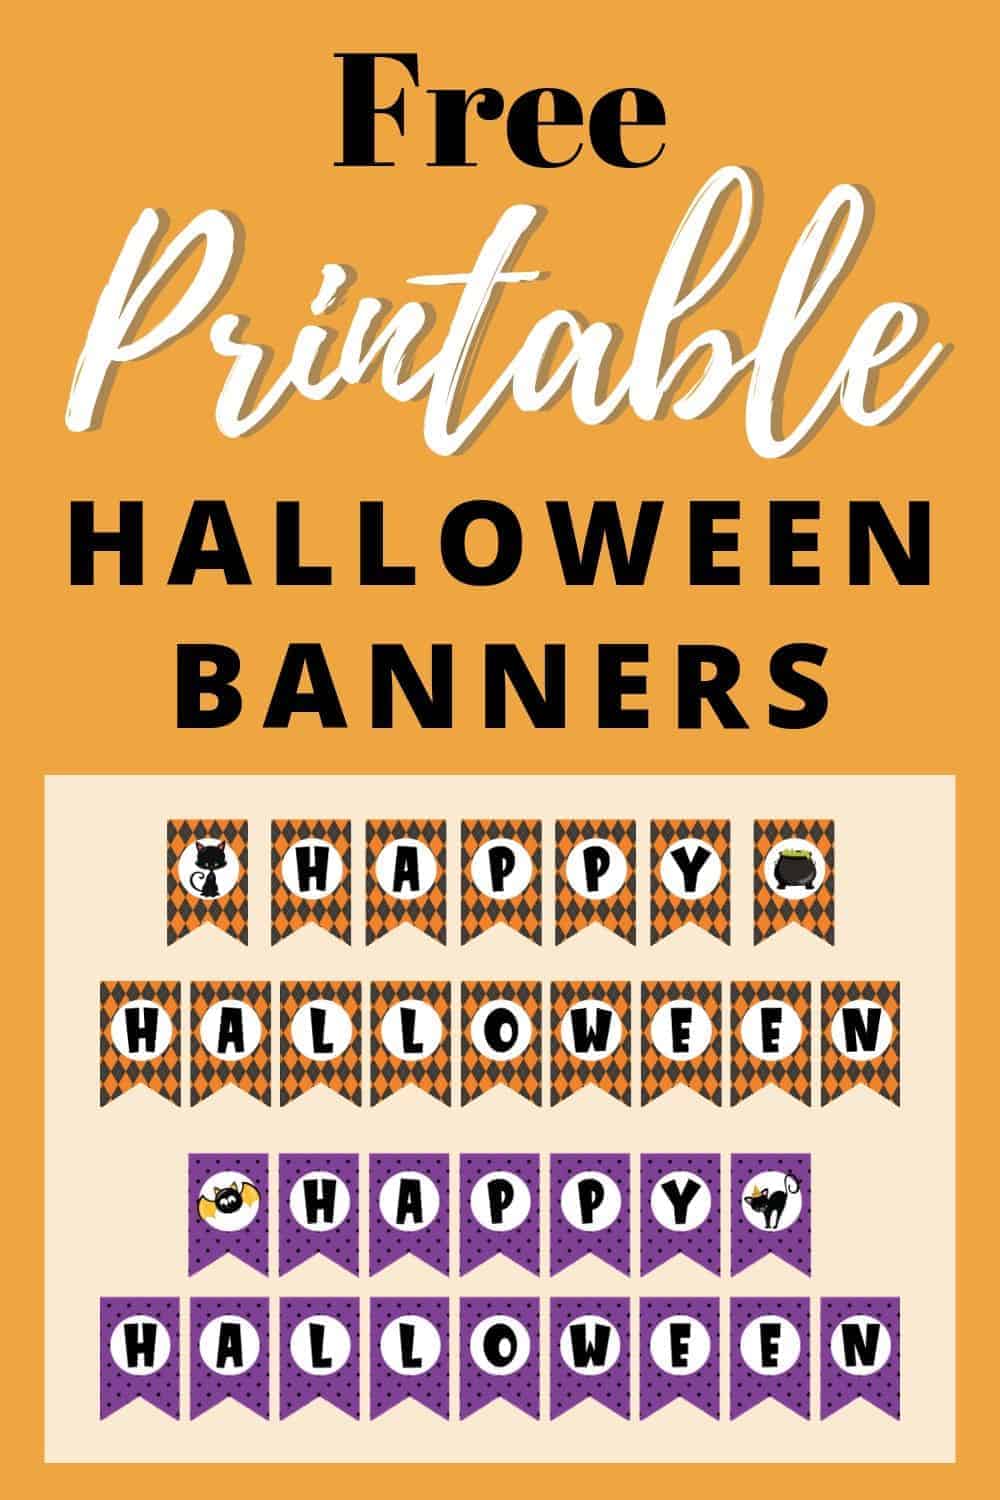 Free Printable Halloween Banner The Artisan Life